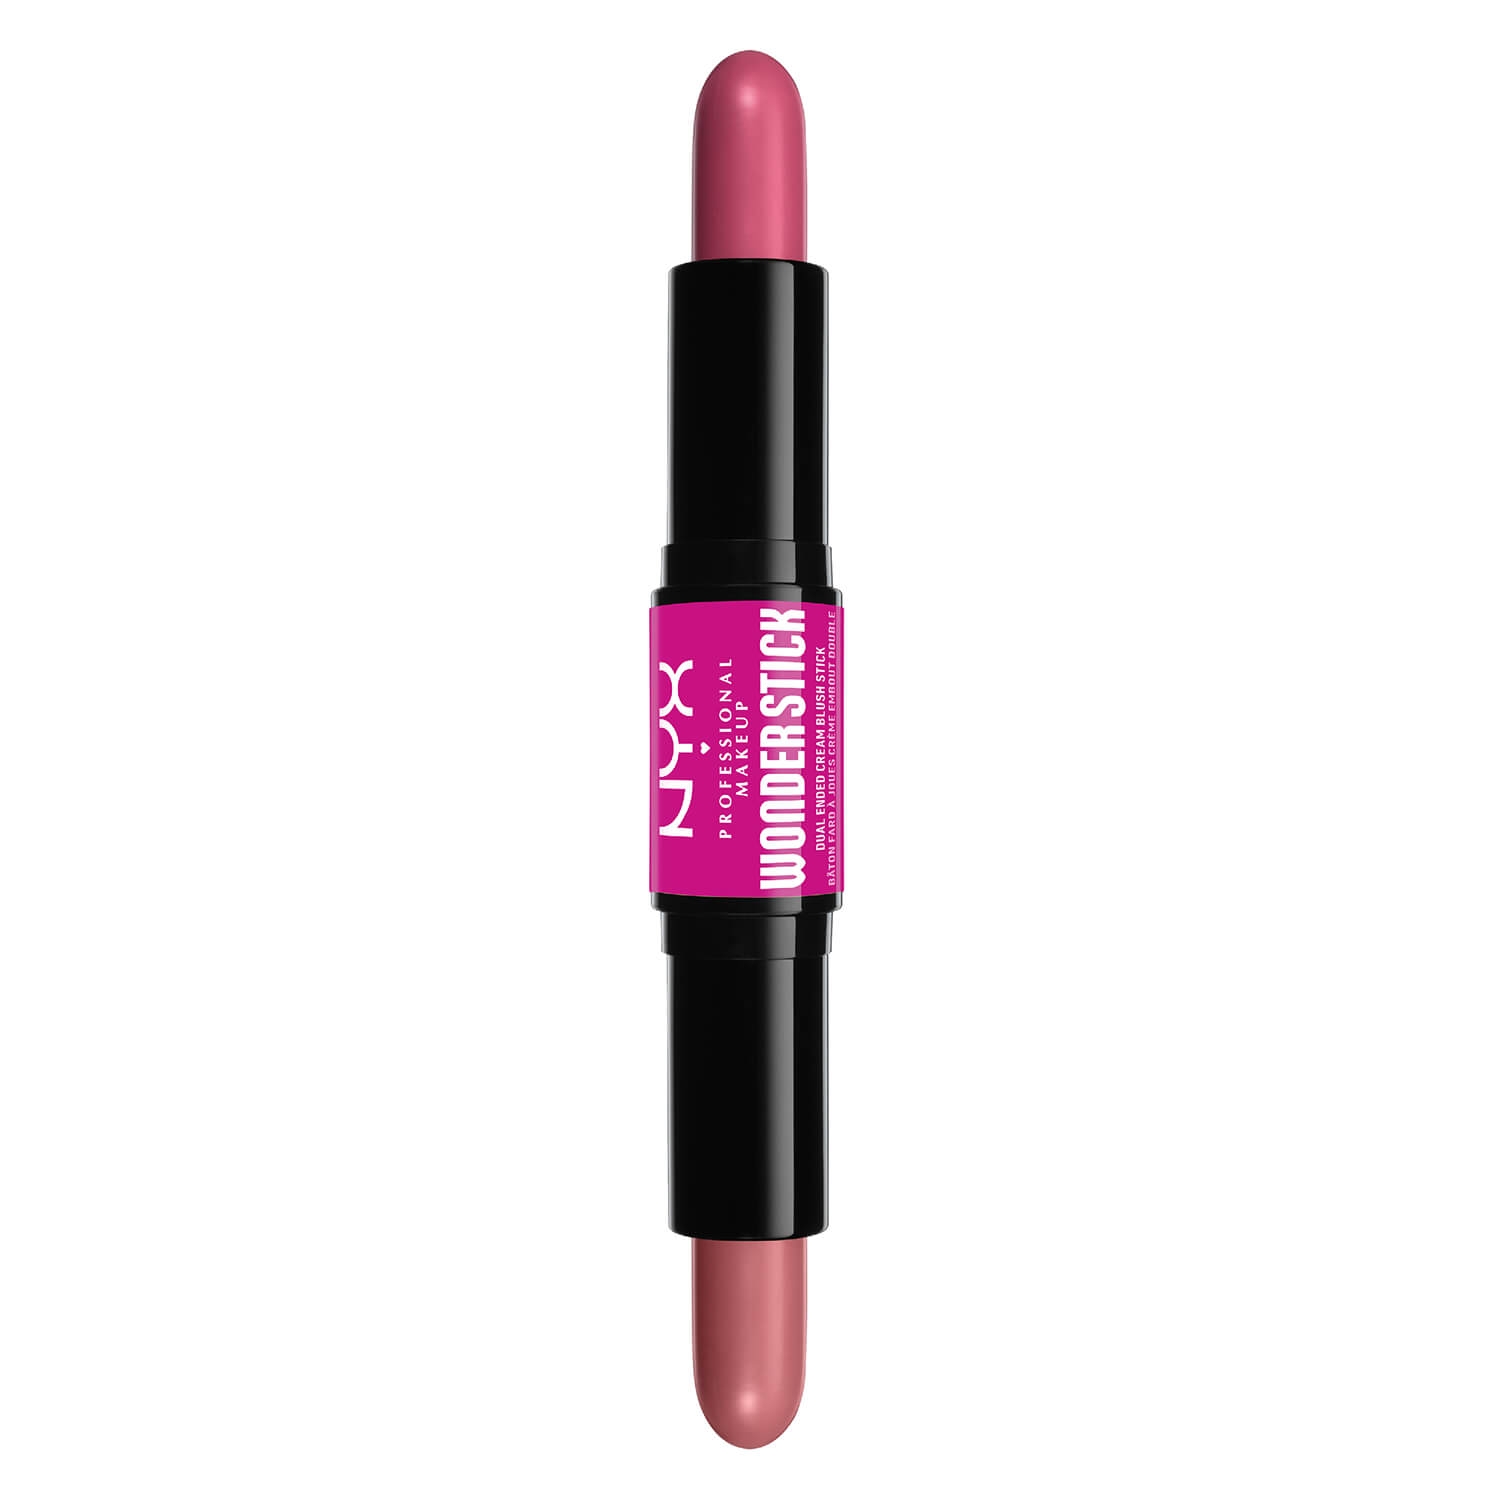 Produktbild von Wonder Stick Blush - Light Peach N Baby Pink